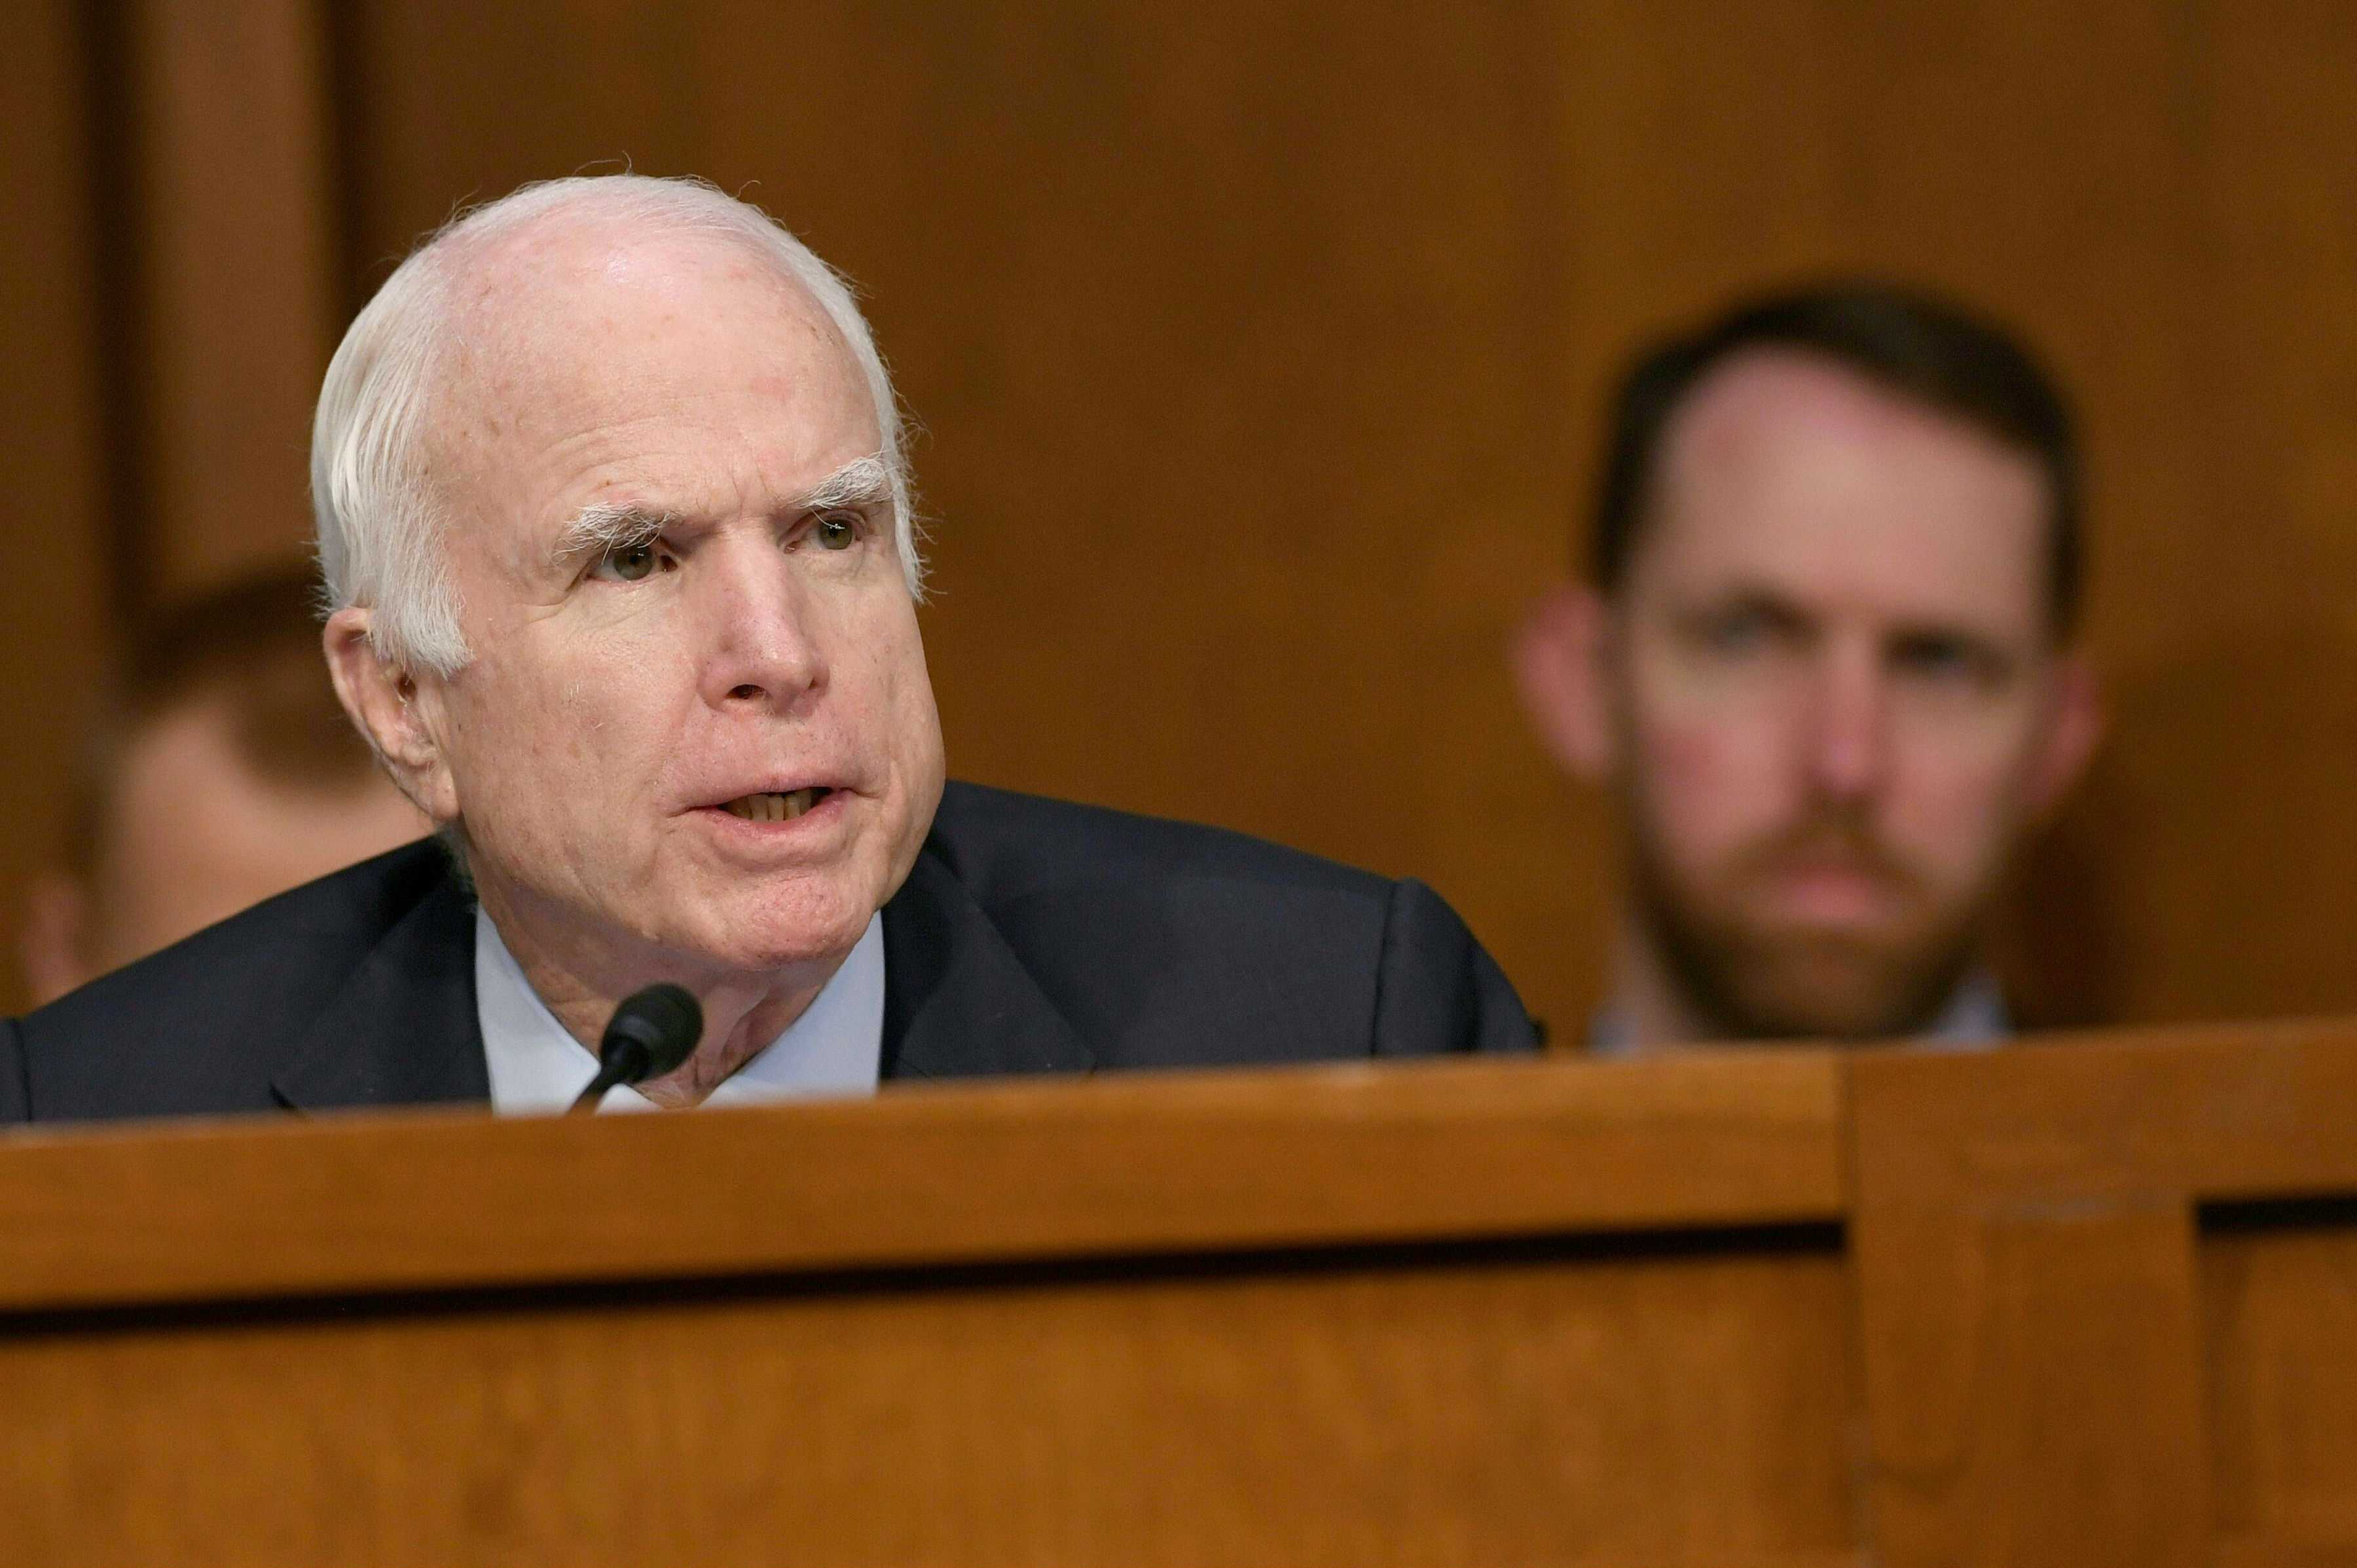 El cáncer que le diagnosticaron al senador McCain es uno de los más letales